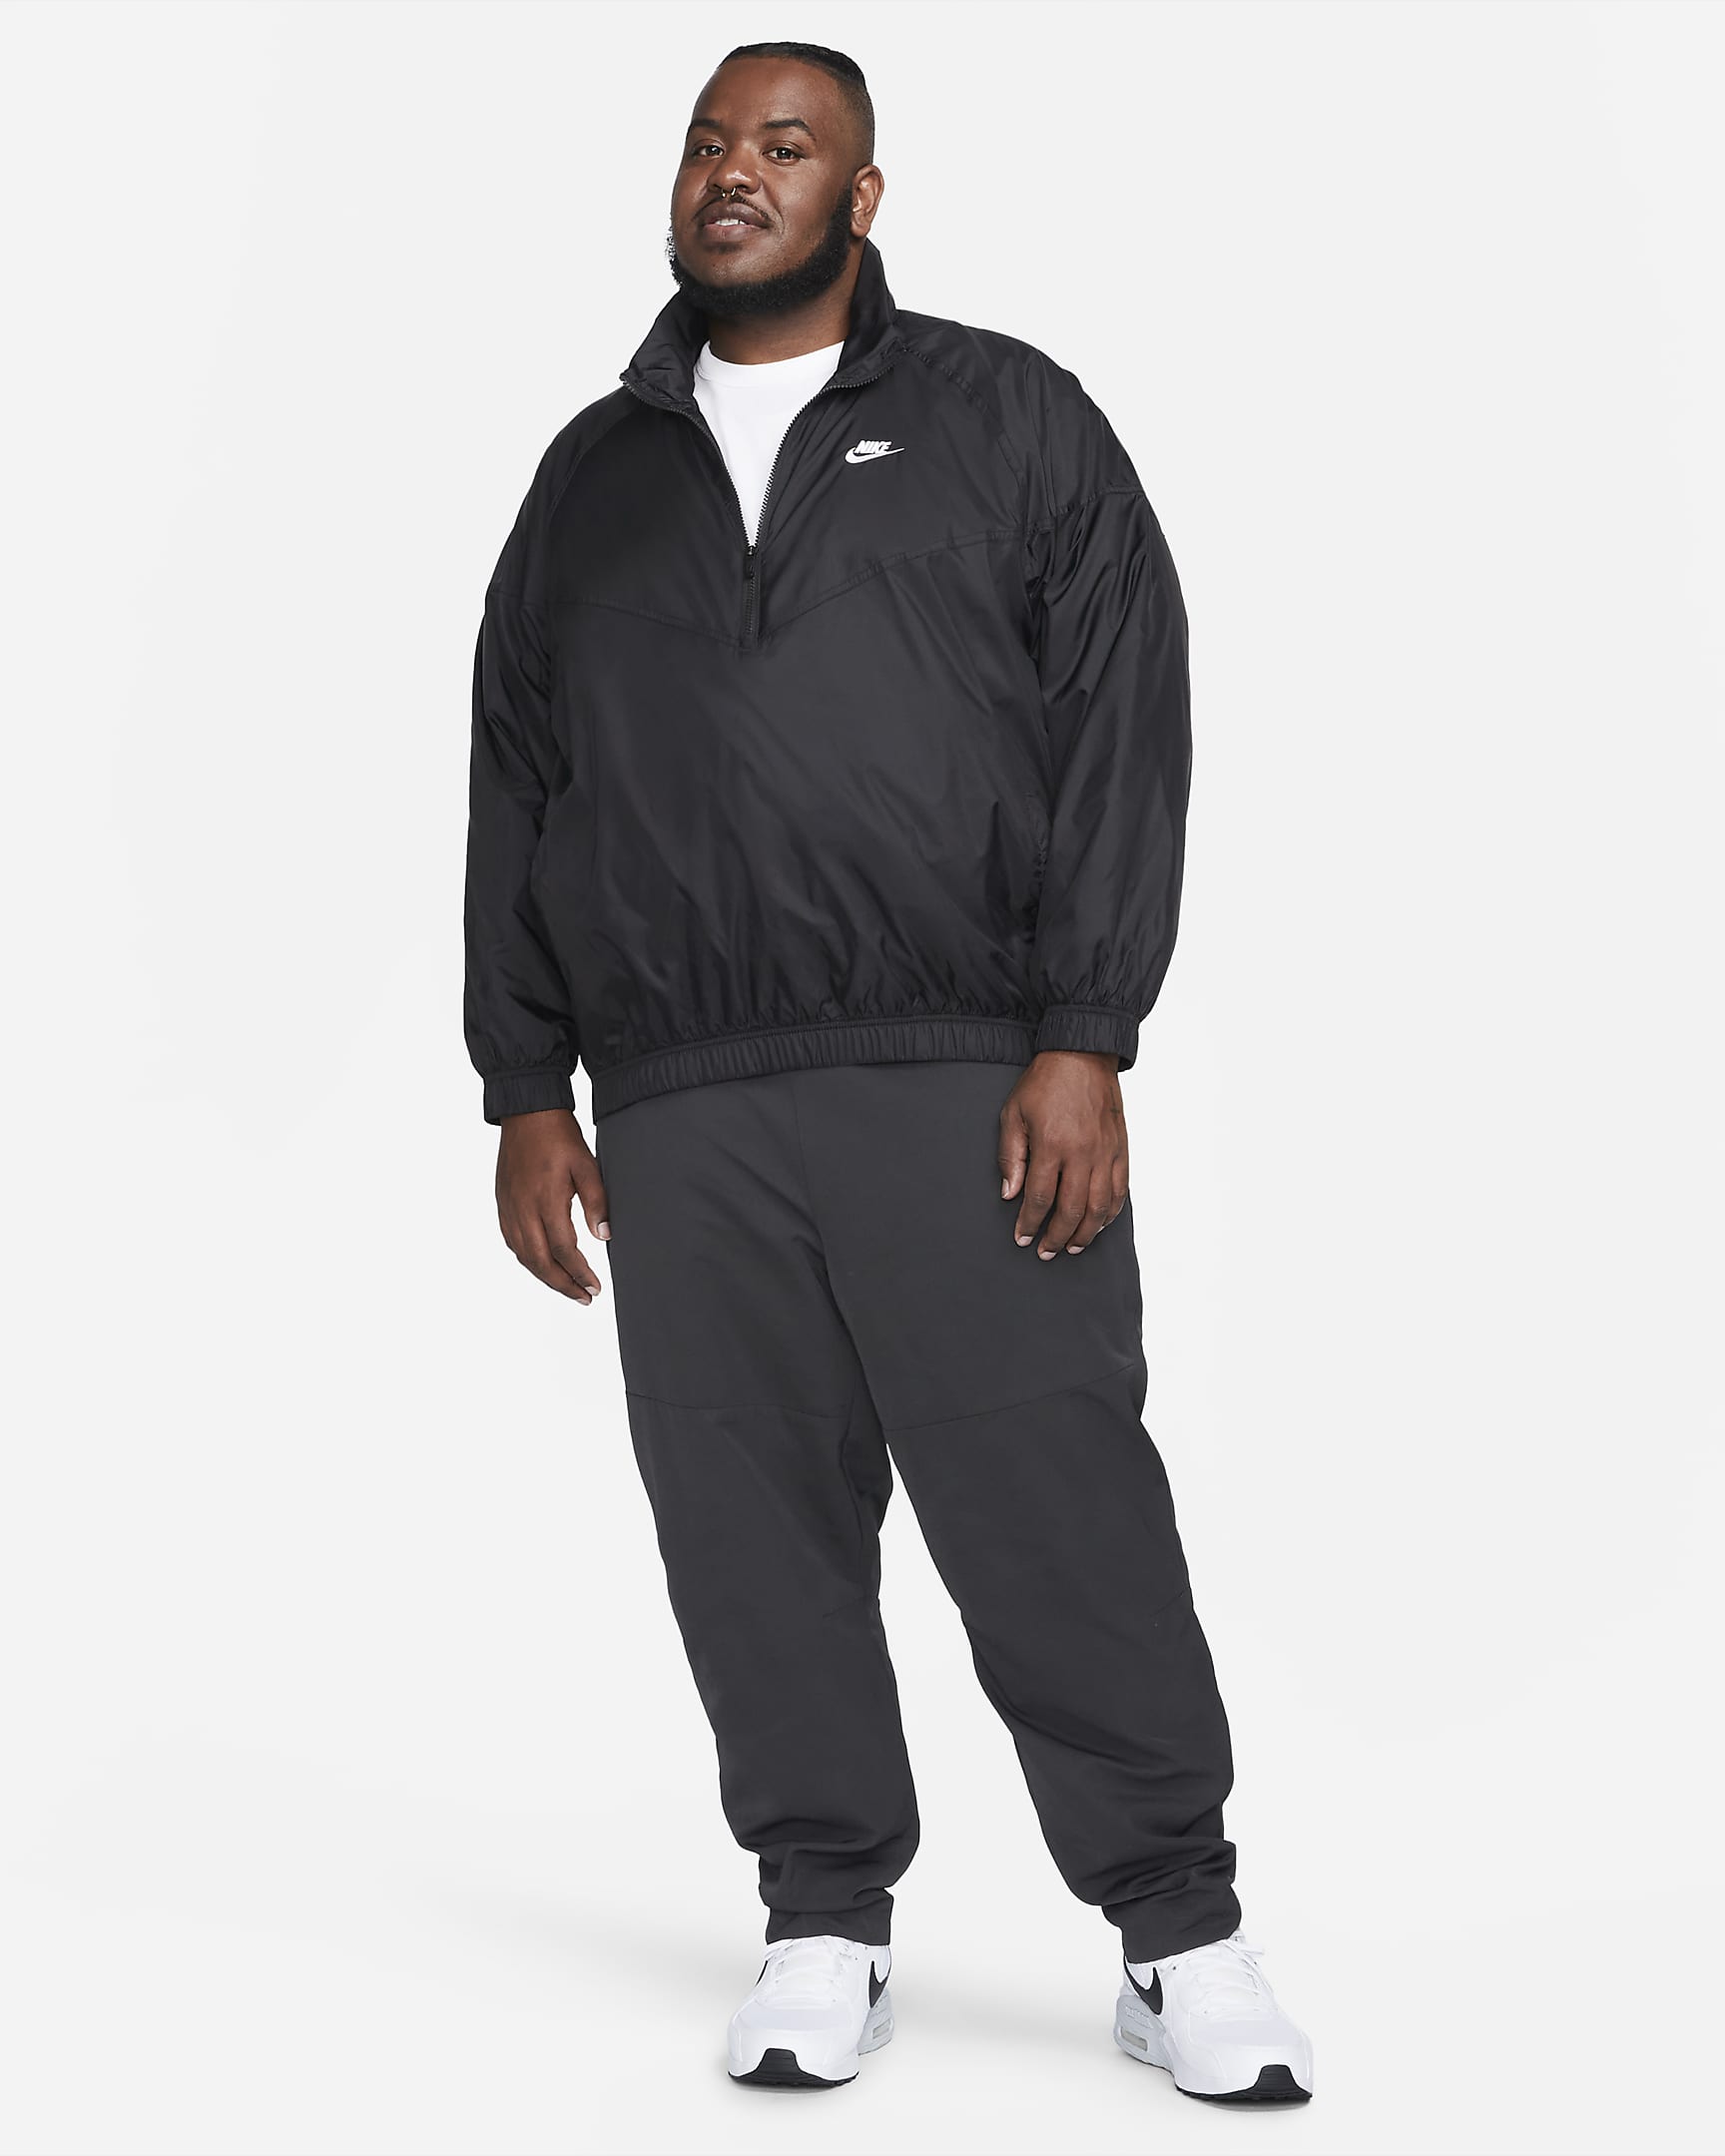 Nike Windrunner Men's Anorak Jacket - Black/White